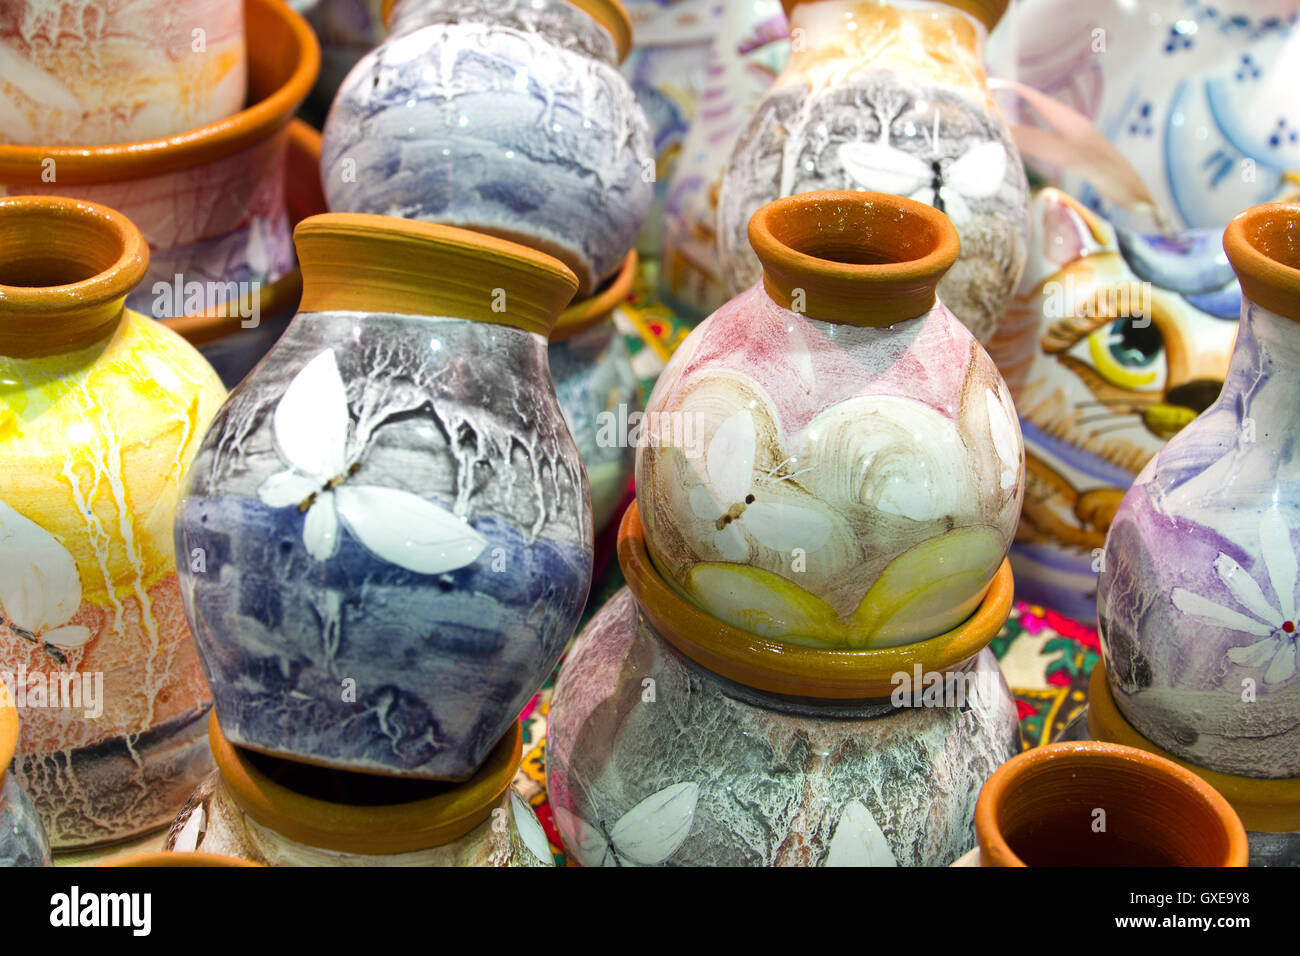 Decorado pintado tradicional artesanal federación de cerámica (vajilla, cosas, Ware, jarras, macetas) con esmalte en el shopboard Foto de stock